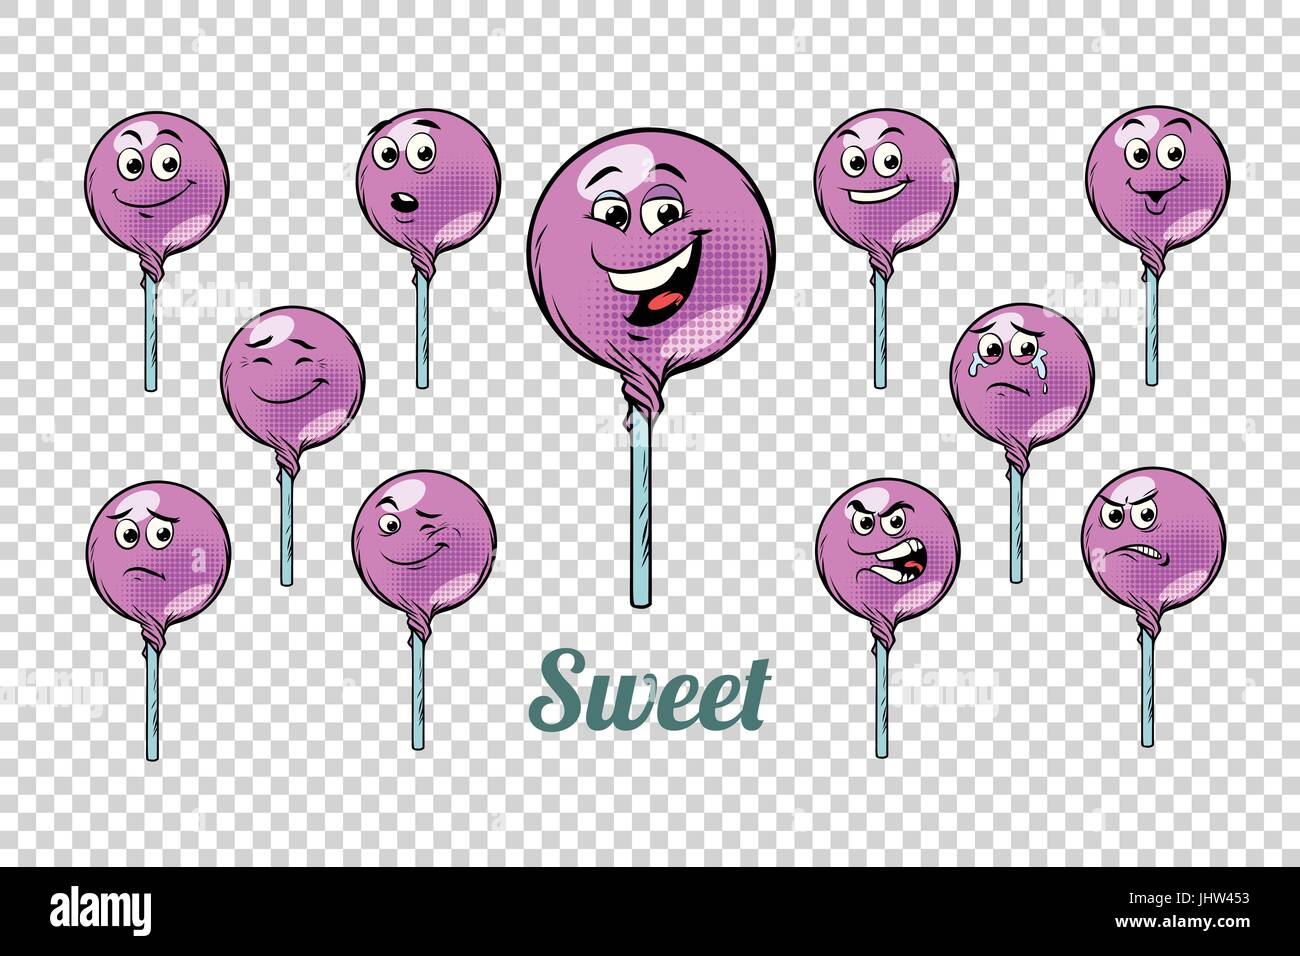 Round Lollipop candy emozioni caratteri insieme di raccolta. Neutro isolato sfondo. Il retro del libro di fumetti cartoon in stile pop art illustrazione vettoriale Illustrazione Vettoriale